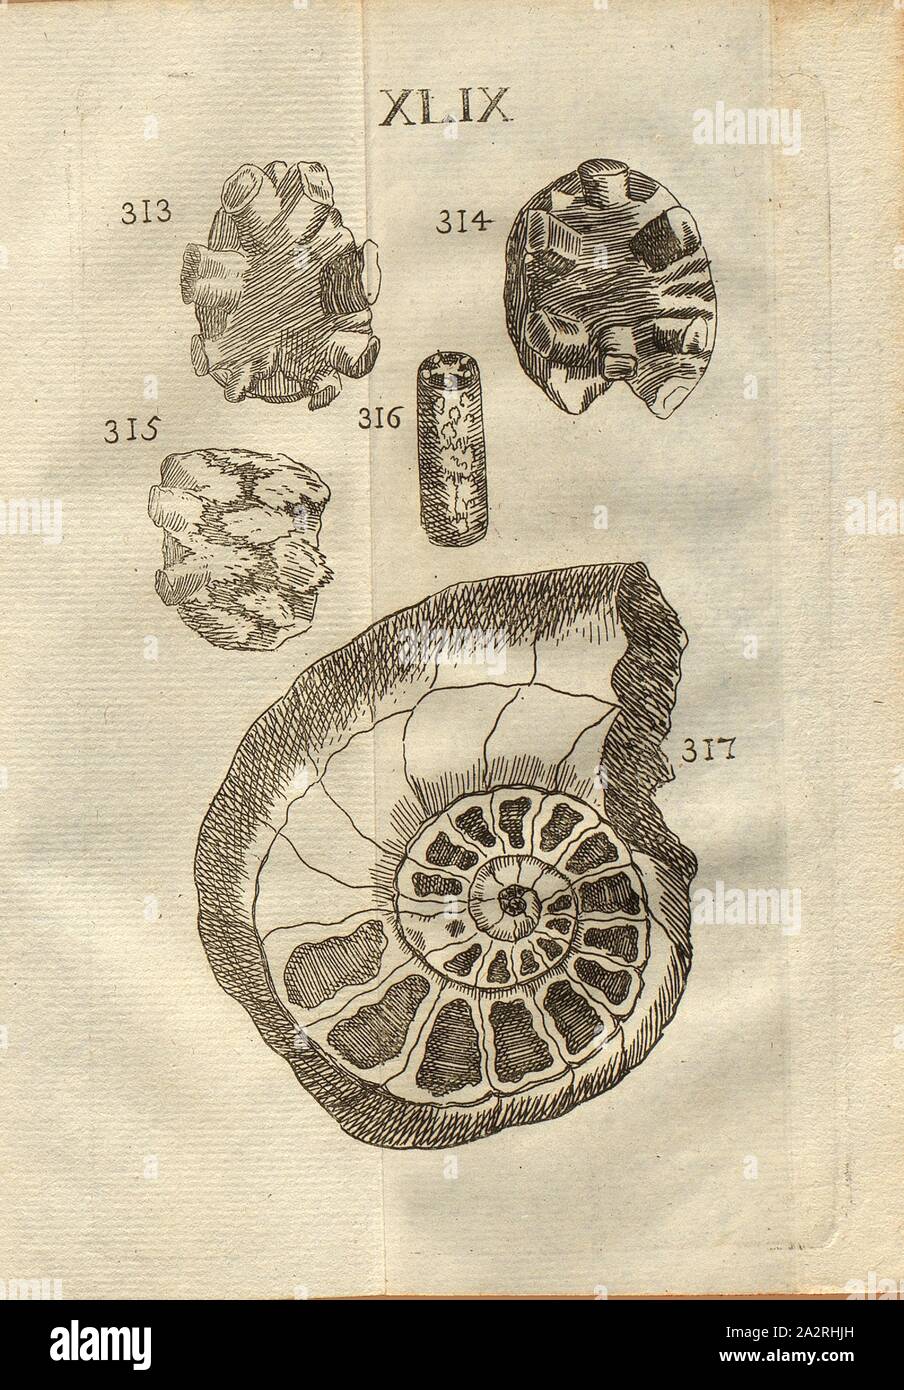 Spondylolites in Ammonites, Class III, Pl. XLIX, Fig. 313: Spondylolitte, ou espèce de vertébre de pierre formée dans une cellule de corne d 'Ammon, Fig. 314: Apophyses de la même espèce, Fig. 315. Deux pareilles pierres jointes l'une à l'autre, Fig. 316: Fragment curieux de corne d 'Ammon, où l'on of the figures of the Apophises & Epiphises, Fig. 317: Belle Corne d' Ammon, avec plusieurs cellules à cristallisations, Pl. XLIX, to p. 312, 1778, Louis Bourget: Traité des pétrifications. Paris: Jombert, 1778 Stock Photo